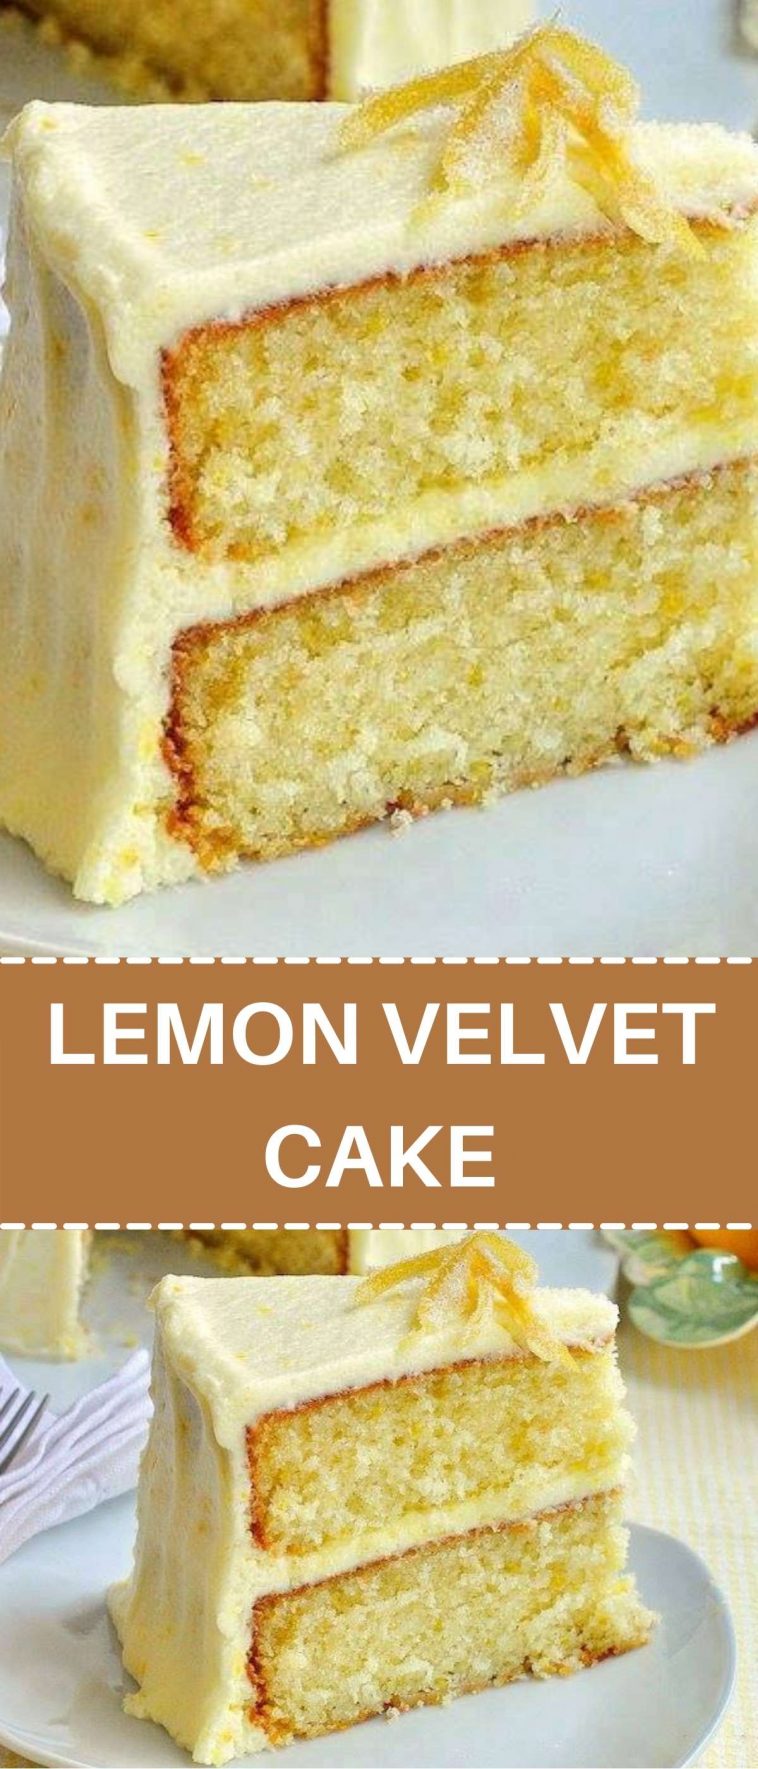 LEMON VELVET CAKE